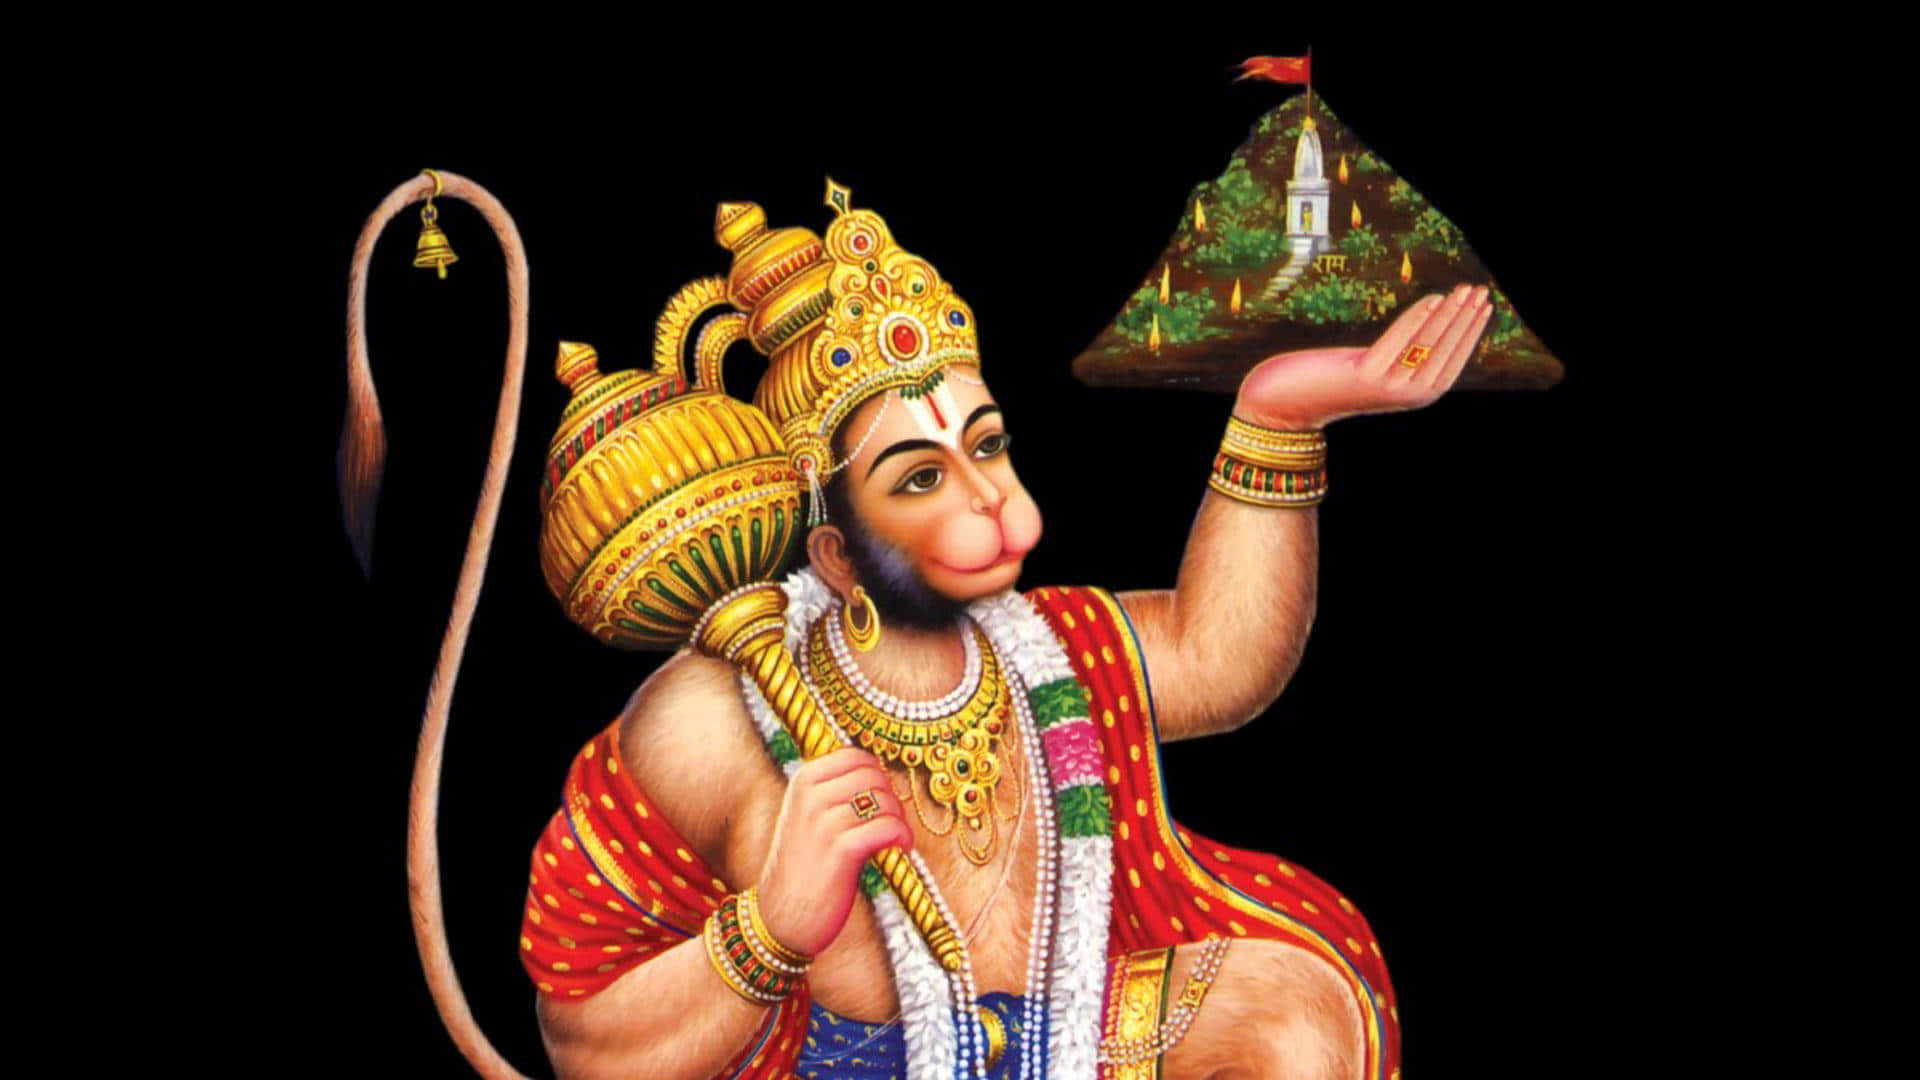 Hanumansosteniendo Una Imagen De Un Templo